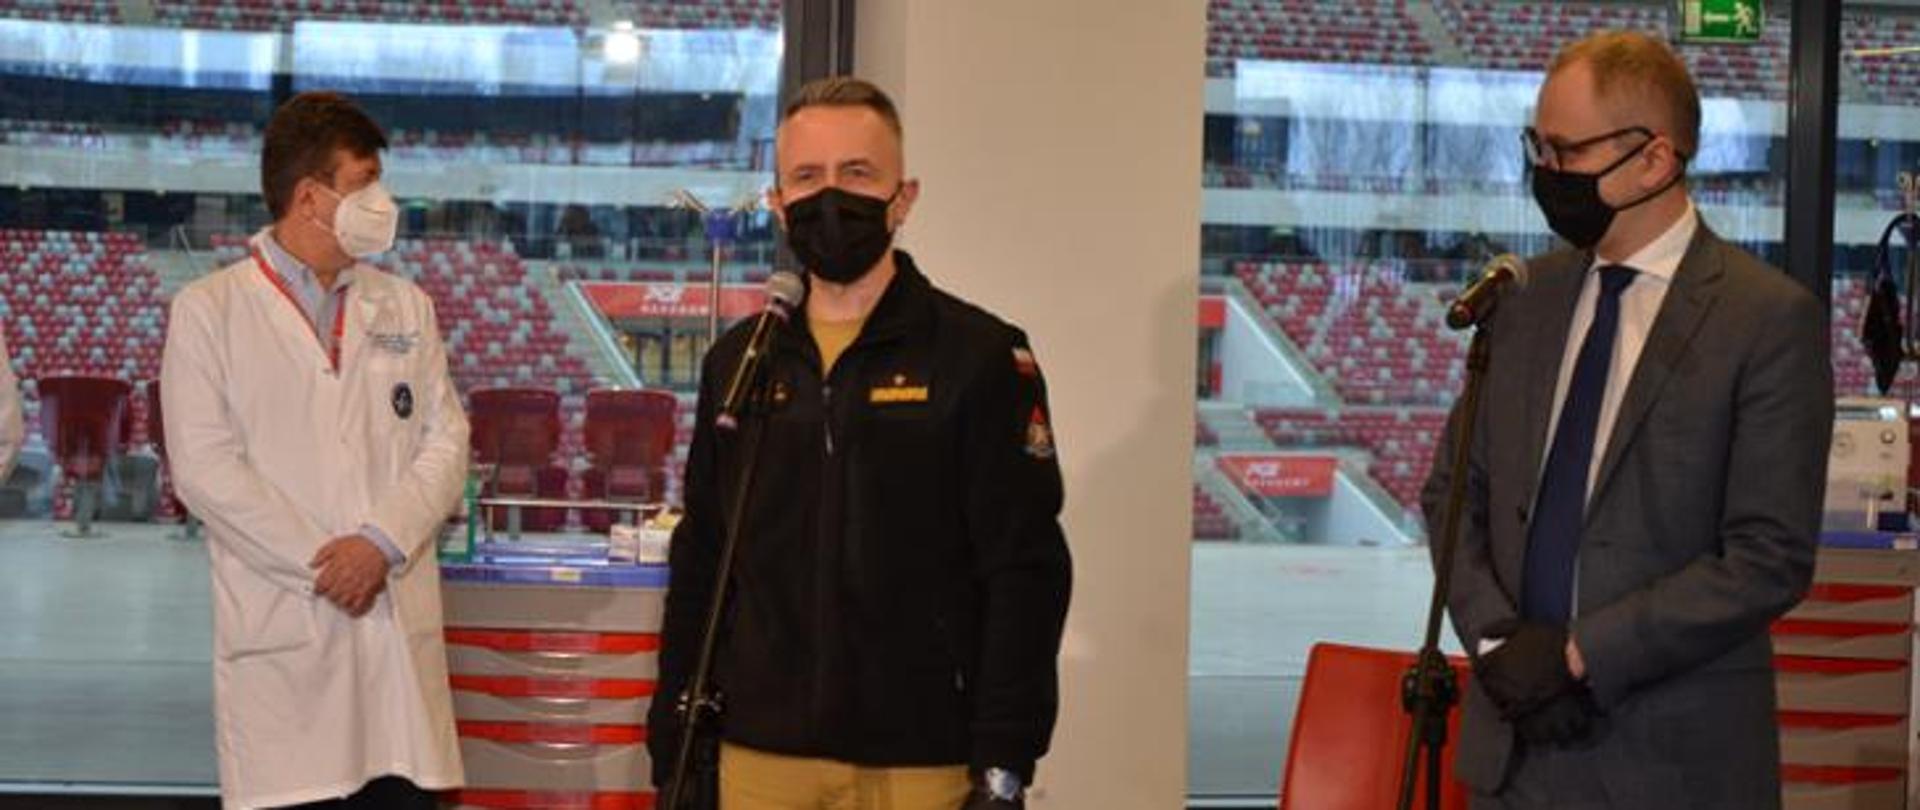 na zdjęciu widoczny Komendant Główny PSP przemawiający do mikrofonu na stadionie narodowym. Ubrany w nowy mundur służbowy strażaka PSP. 